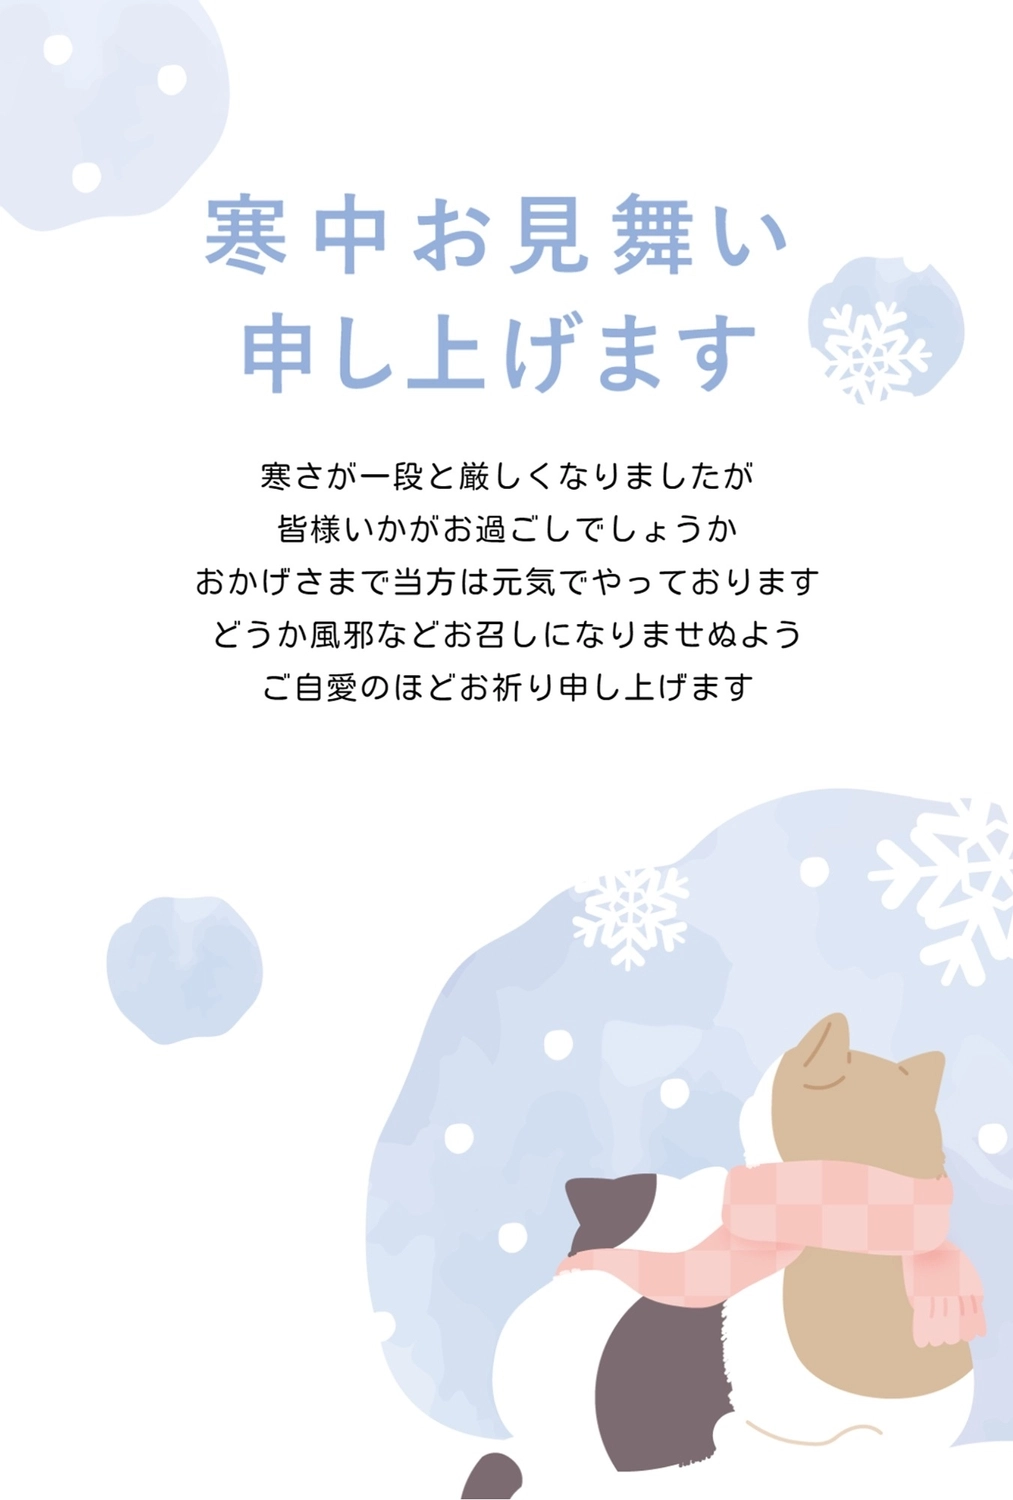 猫の背中と雪の結晶の寒中見舞い, ねこ, 雪, マフラー, 寒中見舞いテンプレート